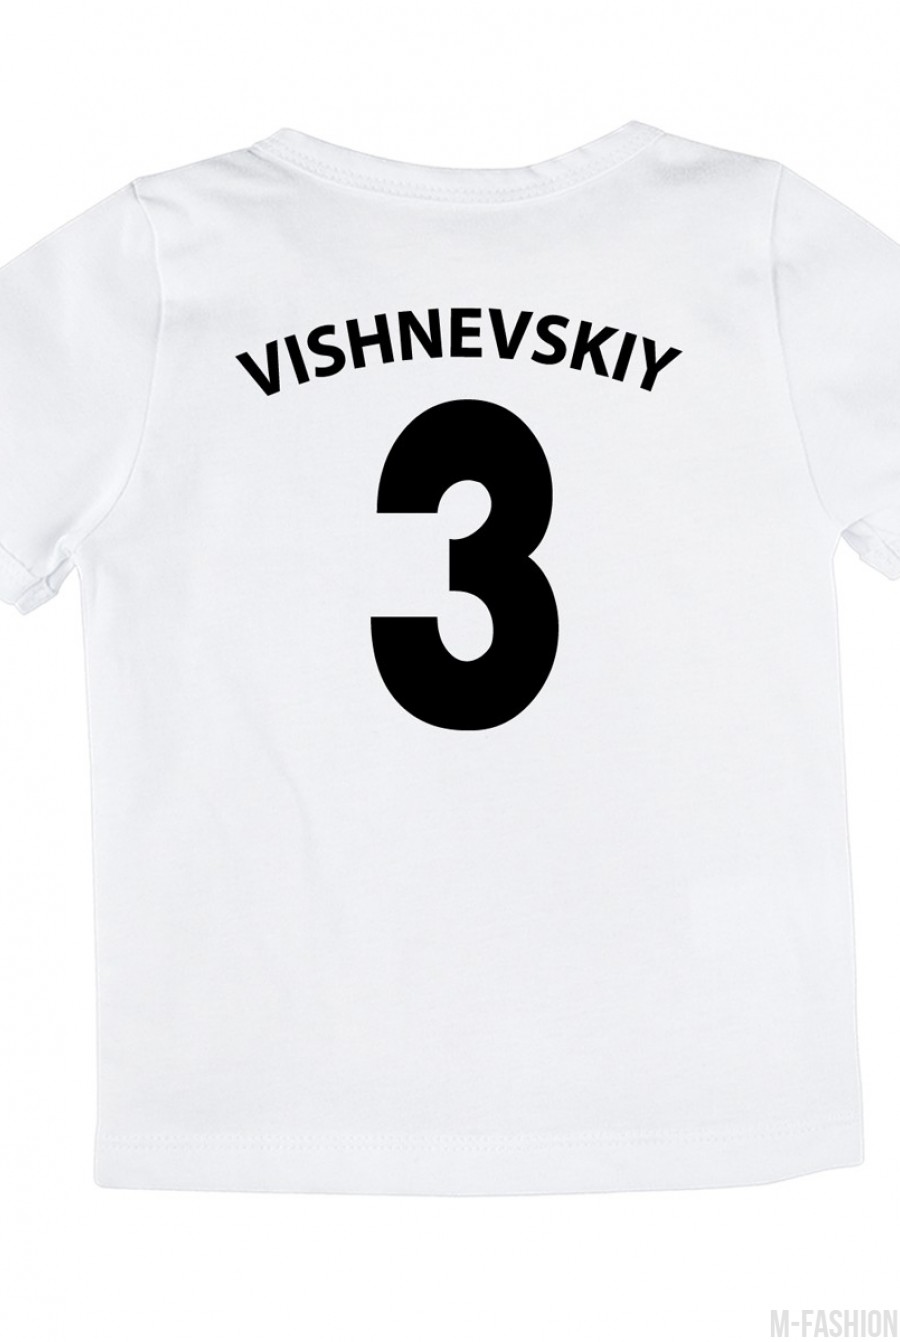 Хлопковая футболка с принтом и возможностью индивидуальной печати фамилии и номера- Фото 4